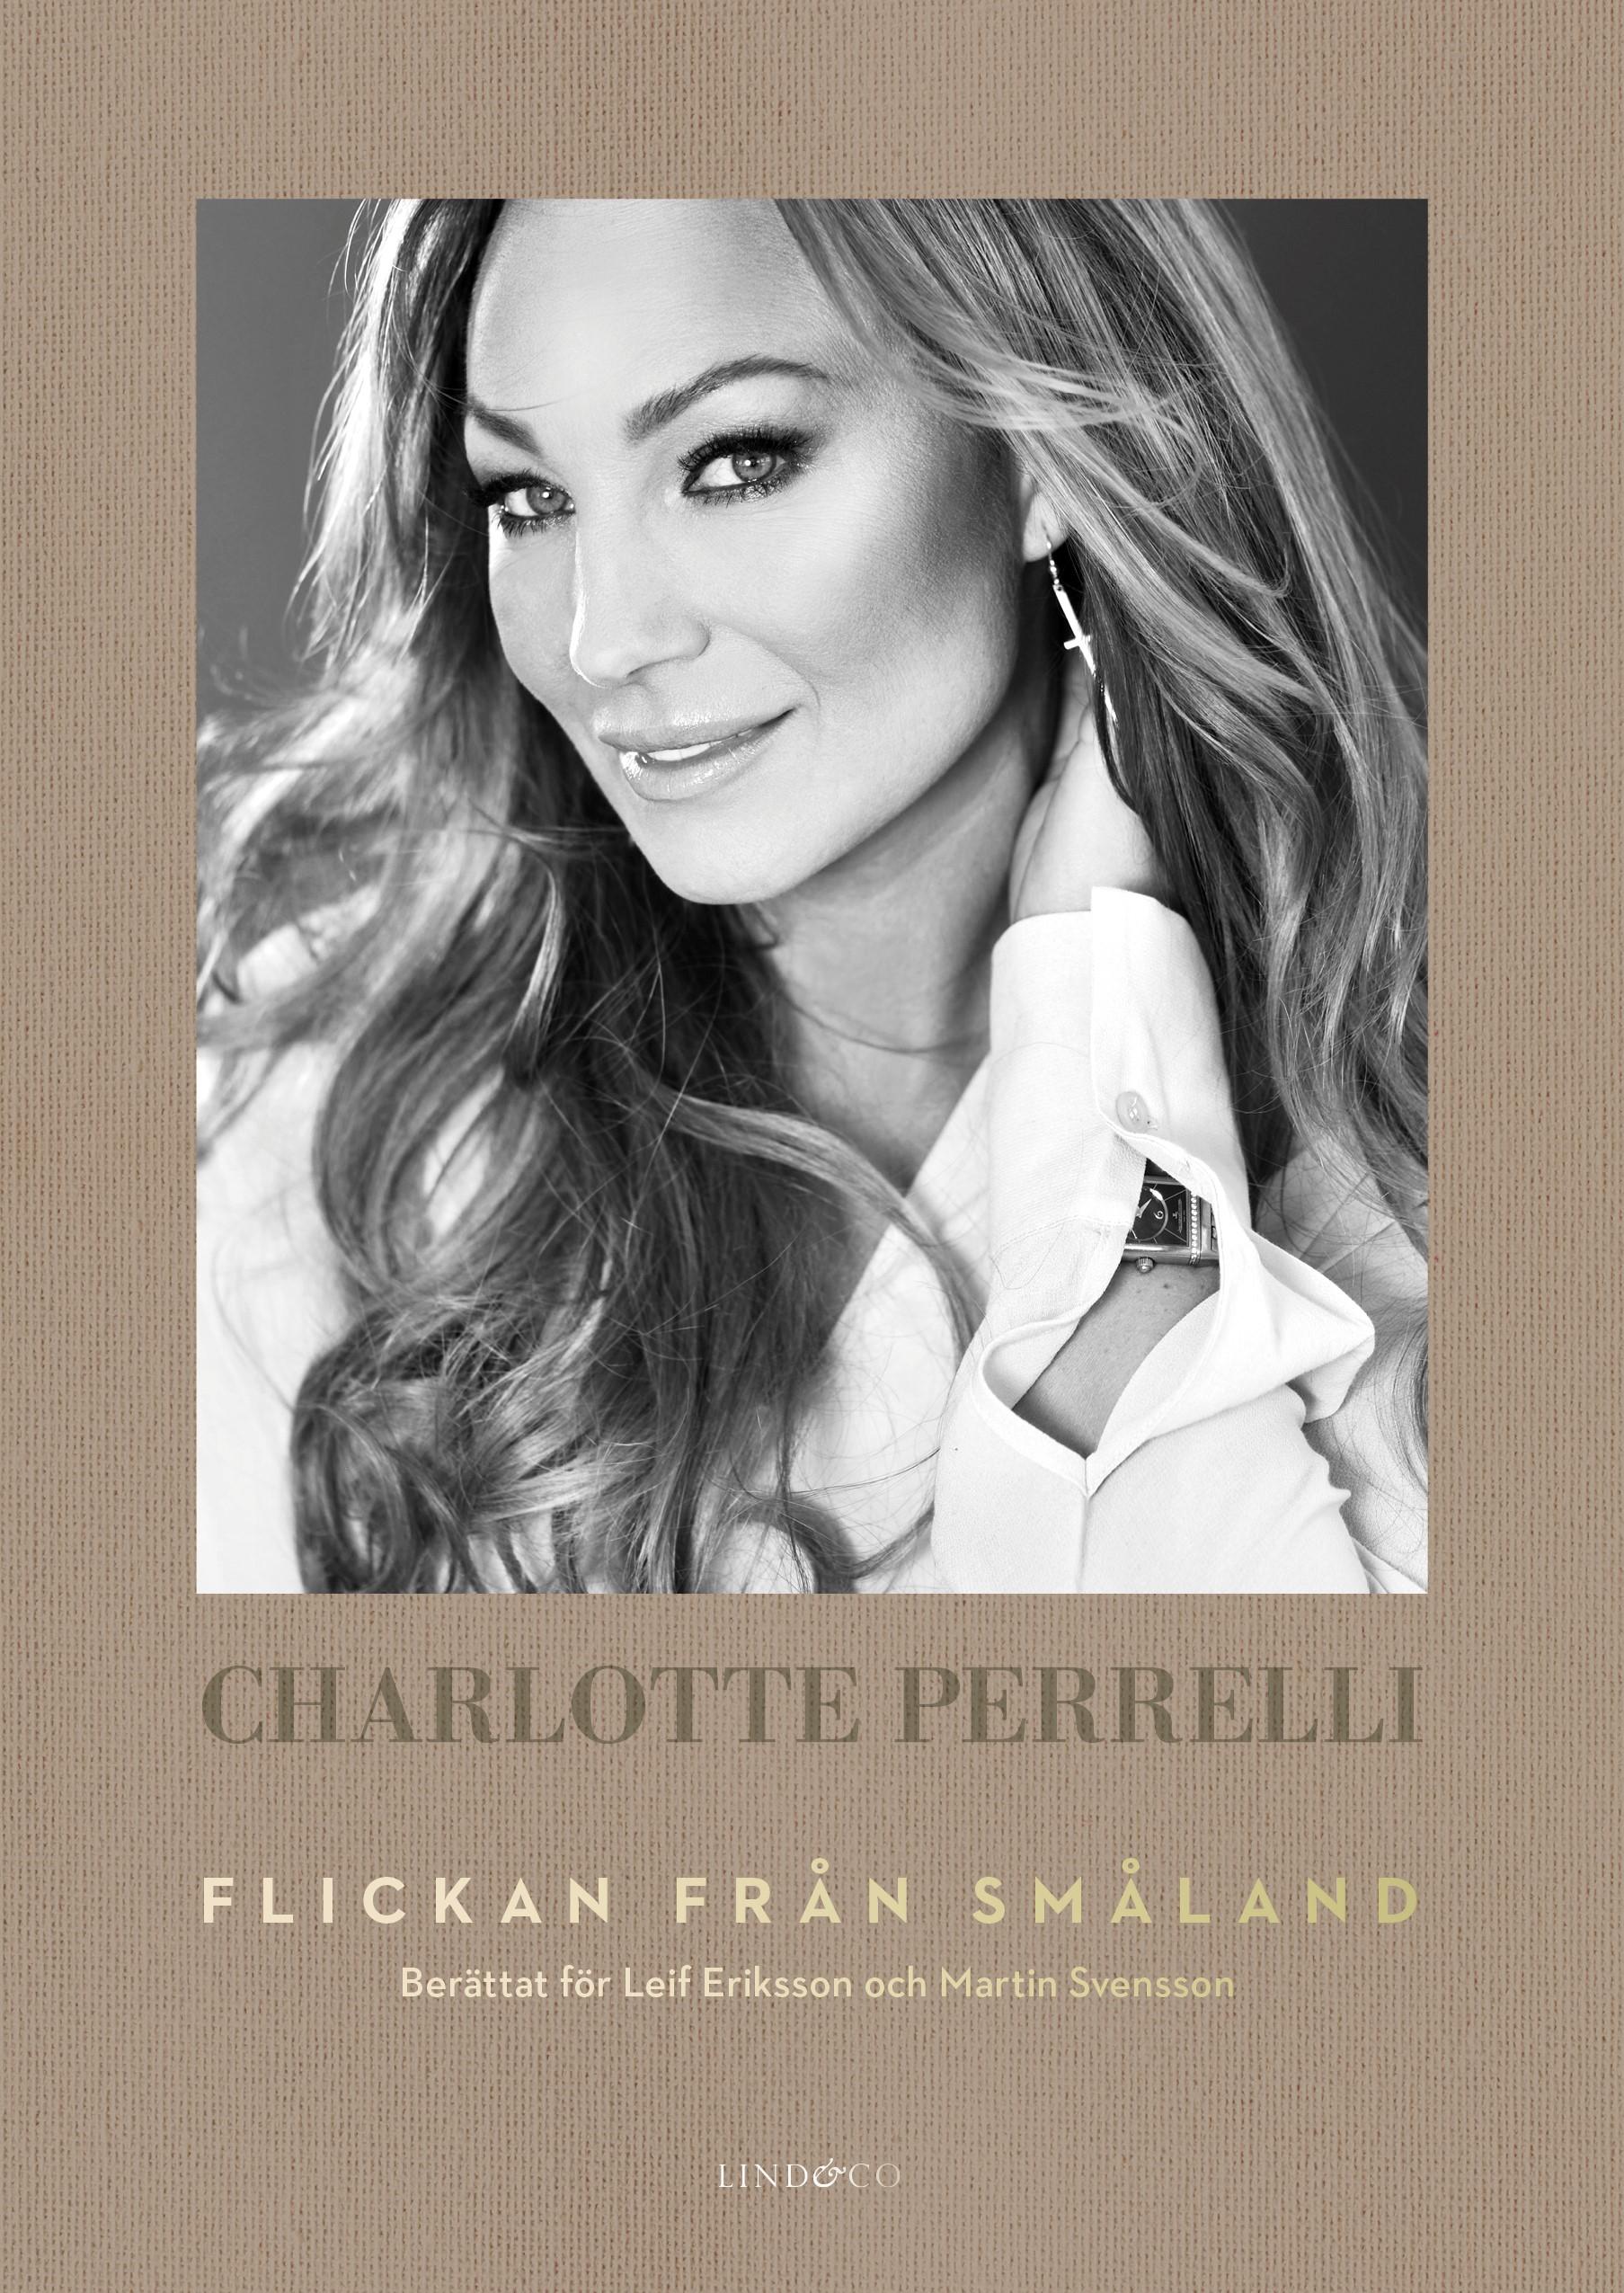 Charlotte Perrellis självbiografi ”Flickan från Småland”